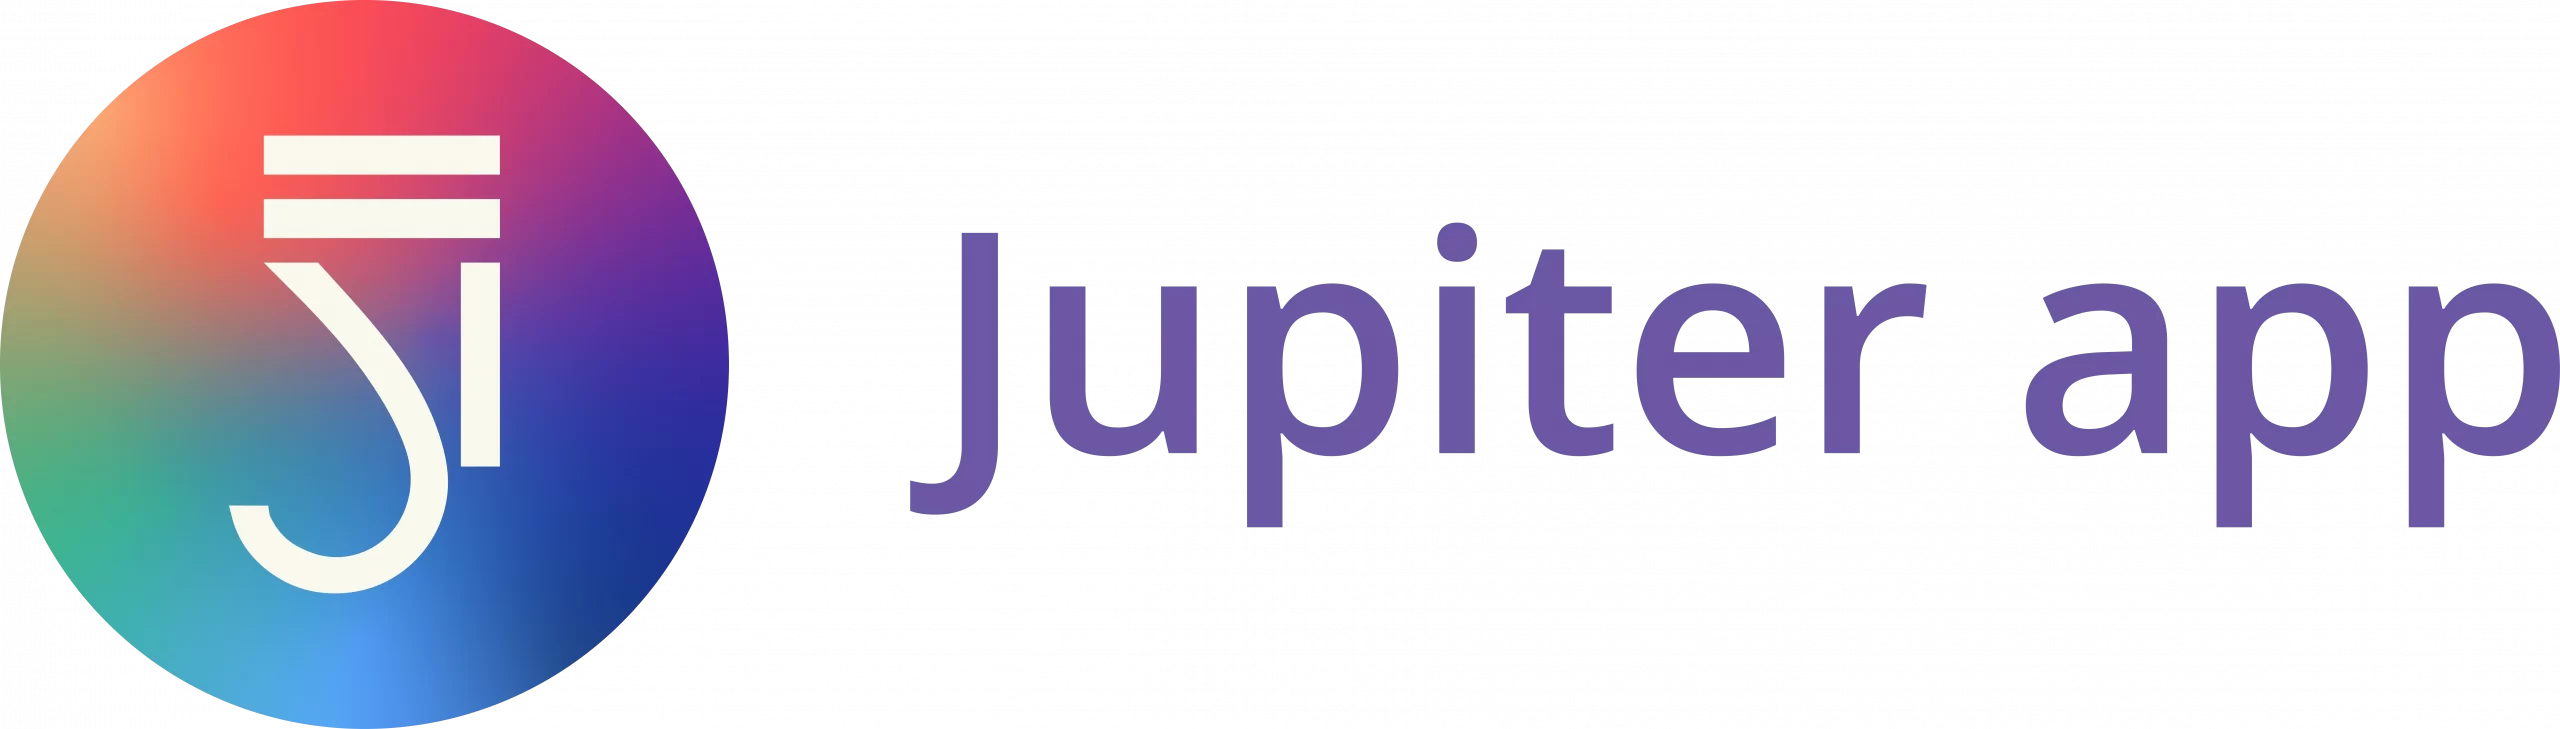 logotipo jupiter app